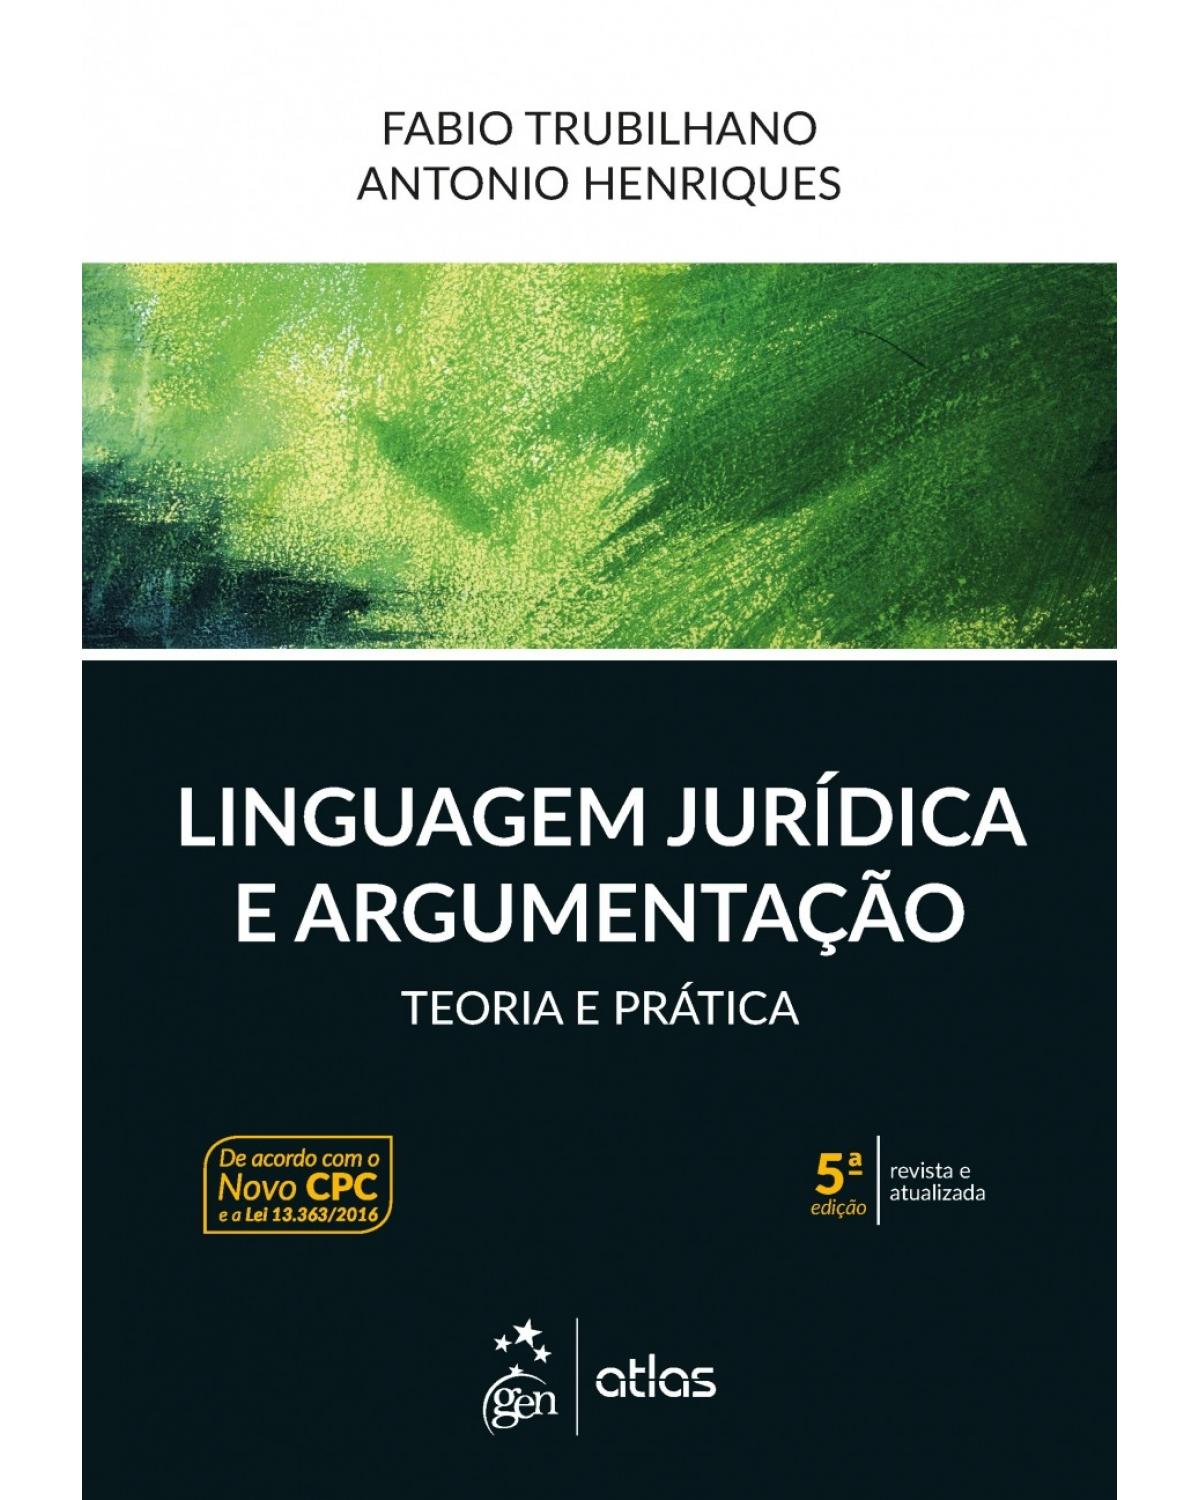 Linguagem Jurídica e Argumentação - Teoria e Prática - Teoria e prática - 5ª Edição | 2017